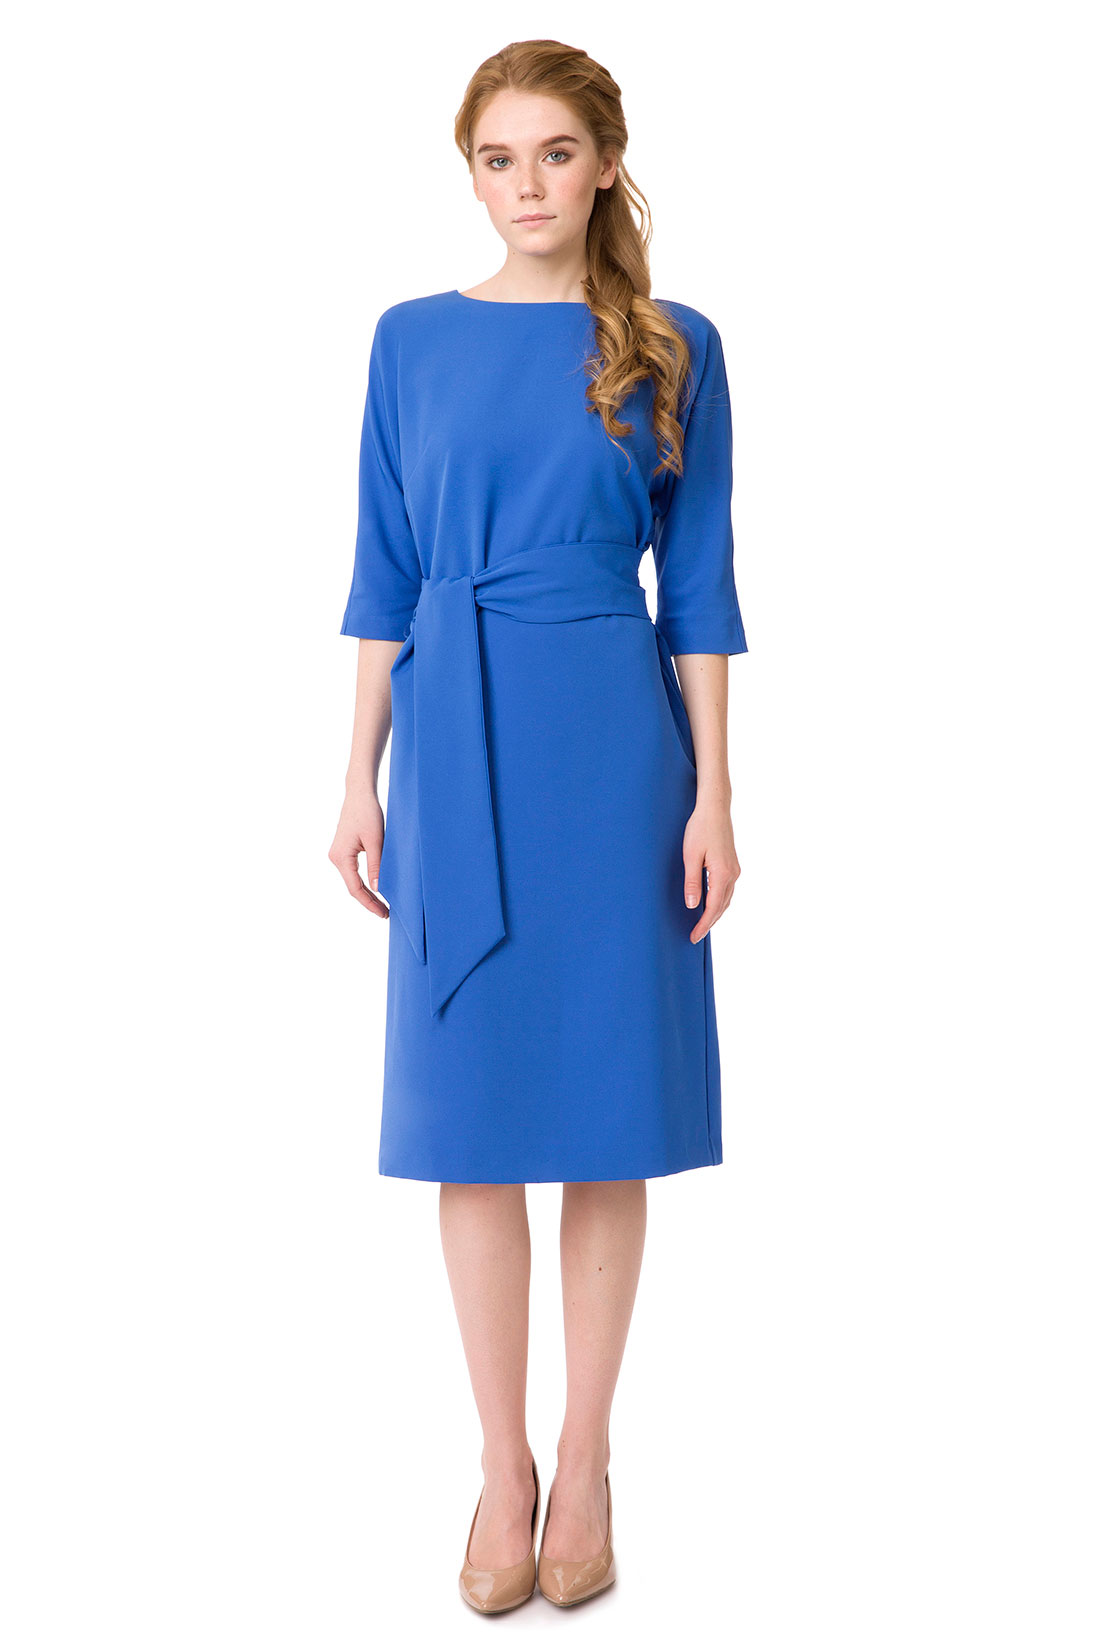 Платье с широким поясом (арт. baon B457024), размер XXL, цвет синий Платье с широким поясом (арт. baon B457024) - фото 1